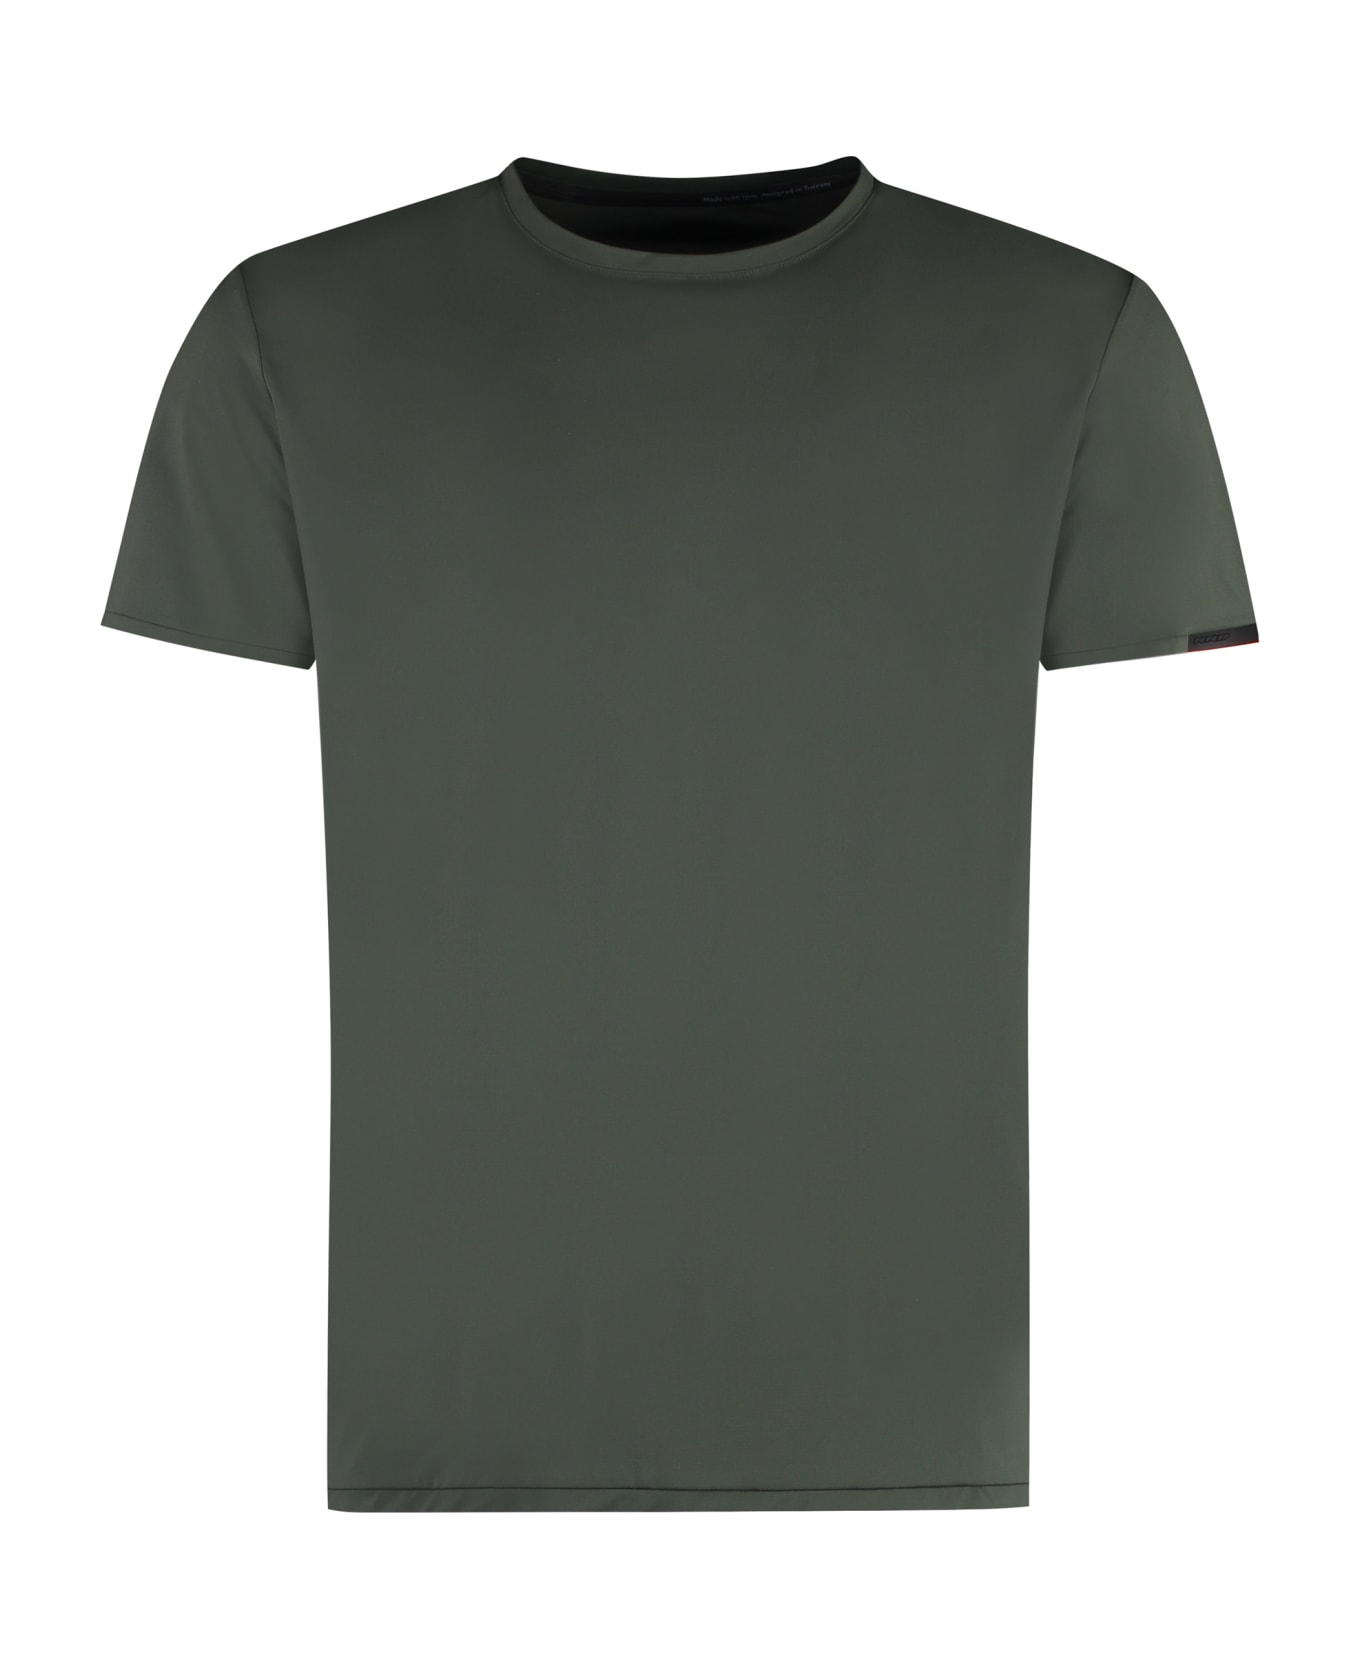 RRD - Roberto Ricci Design Oxford Techno Fabric T-shirt - Bosco